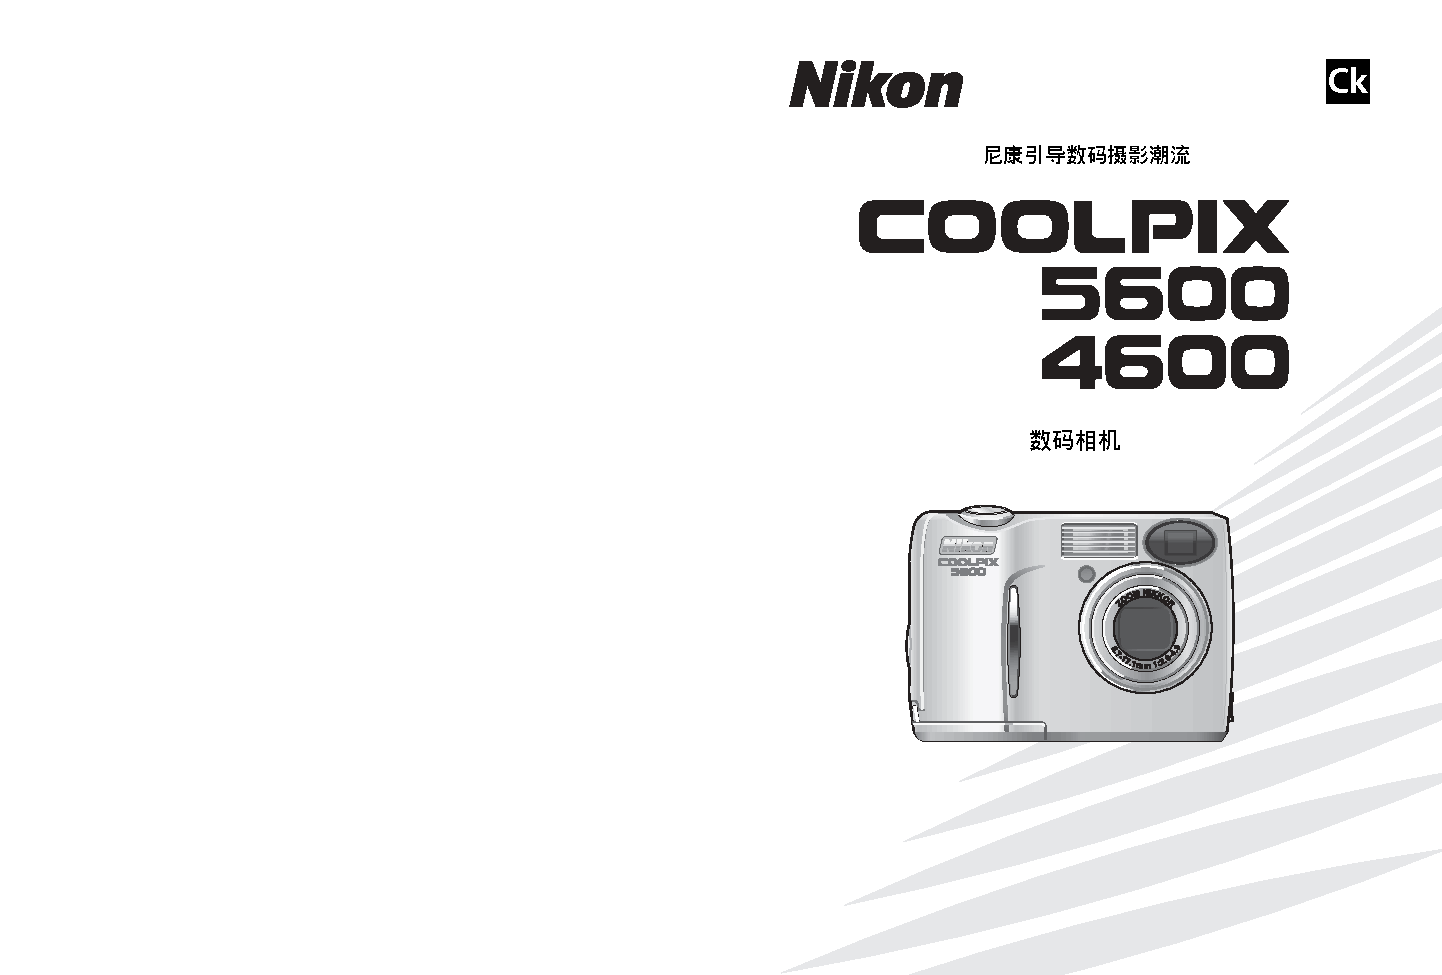 尼康 Nikon COOLPIX 5600 用户指南 封面